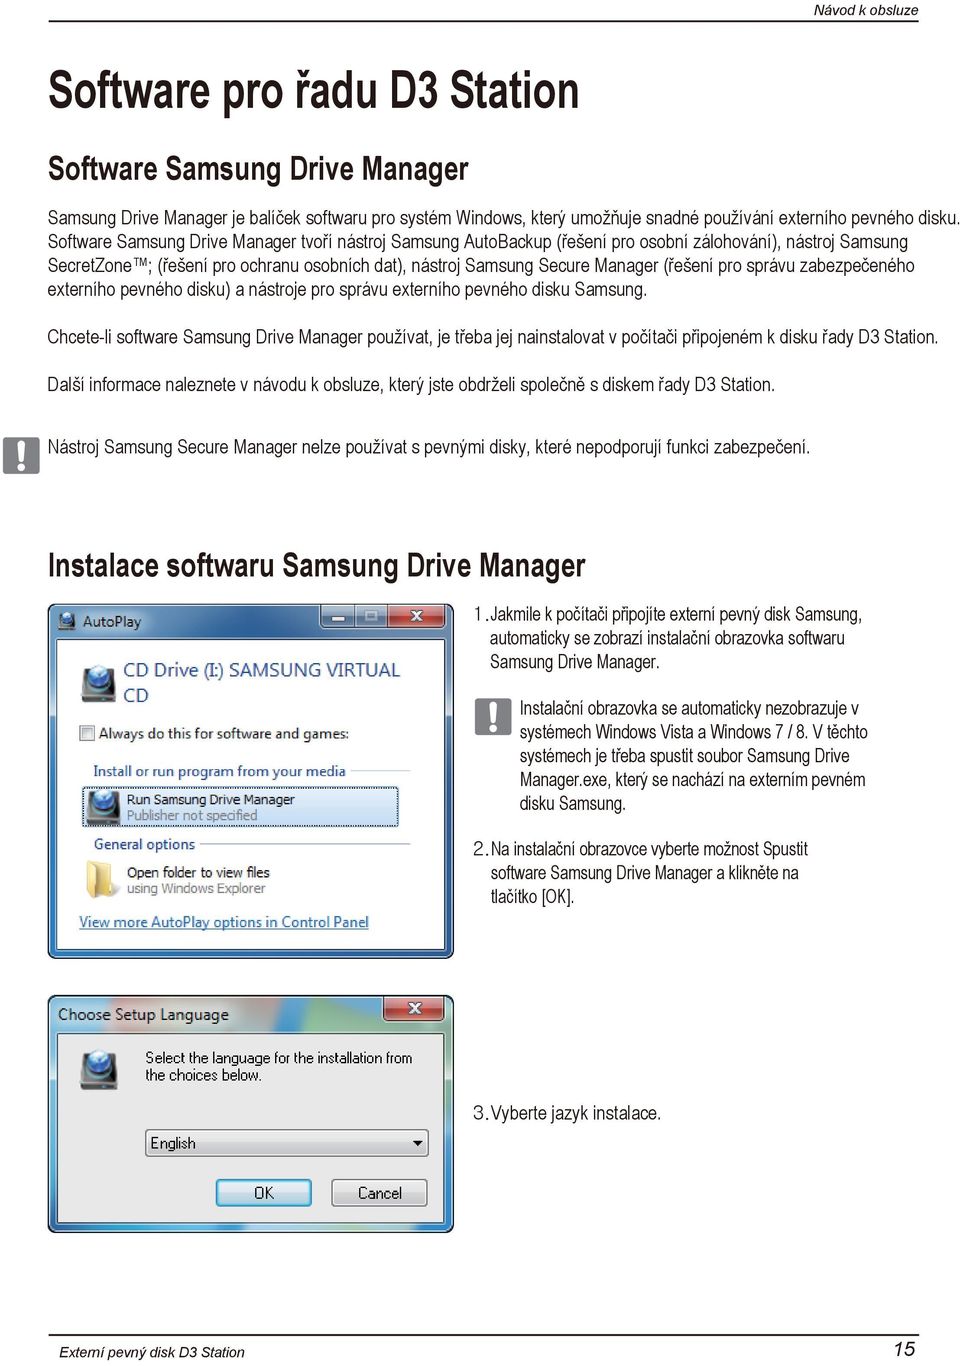 pro správu zabezpečeného externího pevného disku) a nástroje pro správu externího pevného disku Samsung.